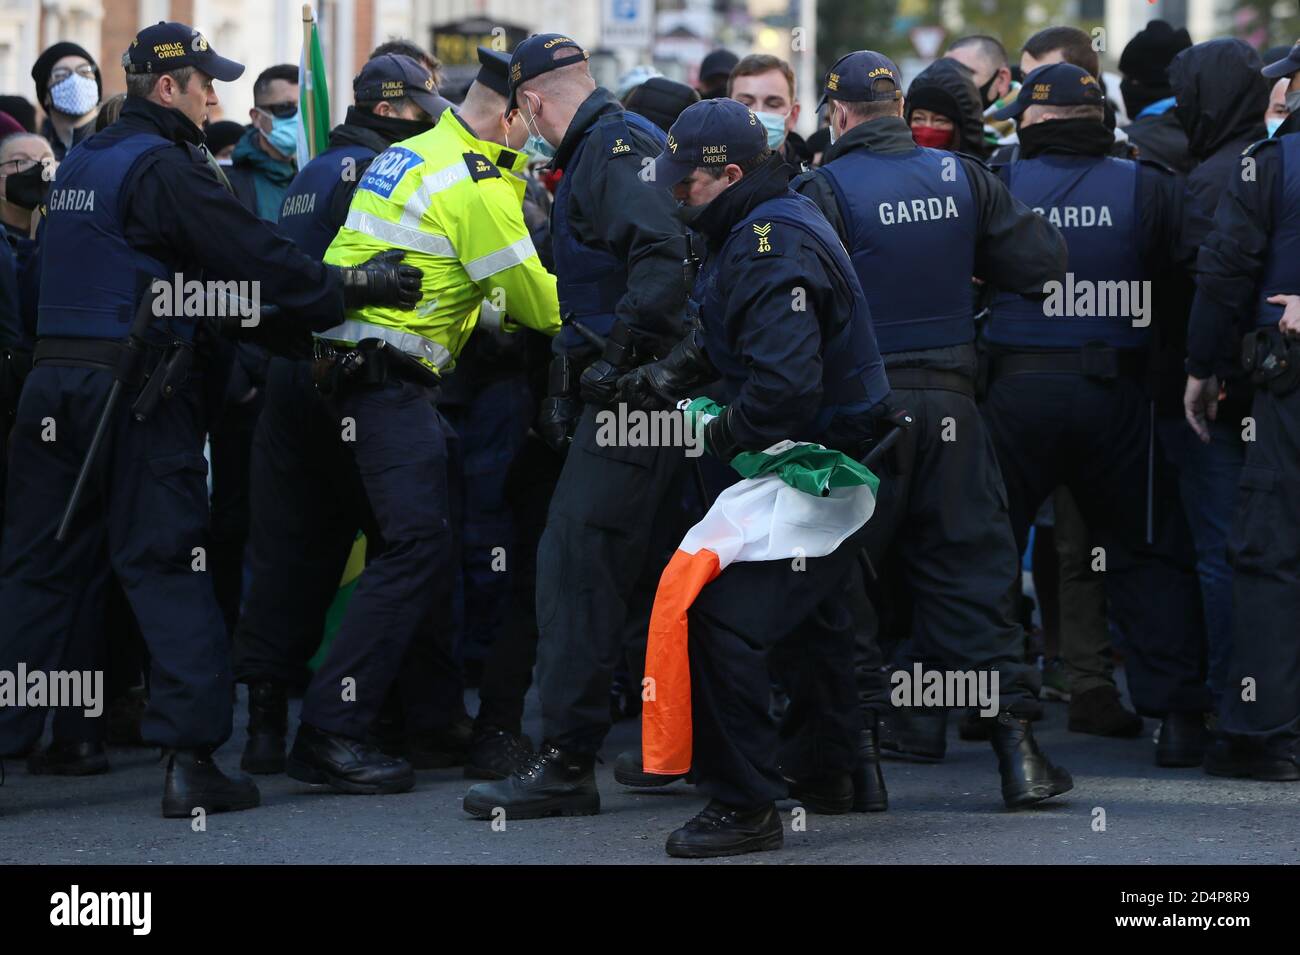 Mitglieder der Garda Public Order Unit entfernen während eines Anti-Lockdown-Protests vor dem Leinster House in Dublin eine irische Trikolore von den Gegendemonstrierenden, da Irland weiterhin landesweit an einer Stufe-3-Coronavirus-Sperre versperrt ist. Stockfoto